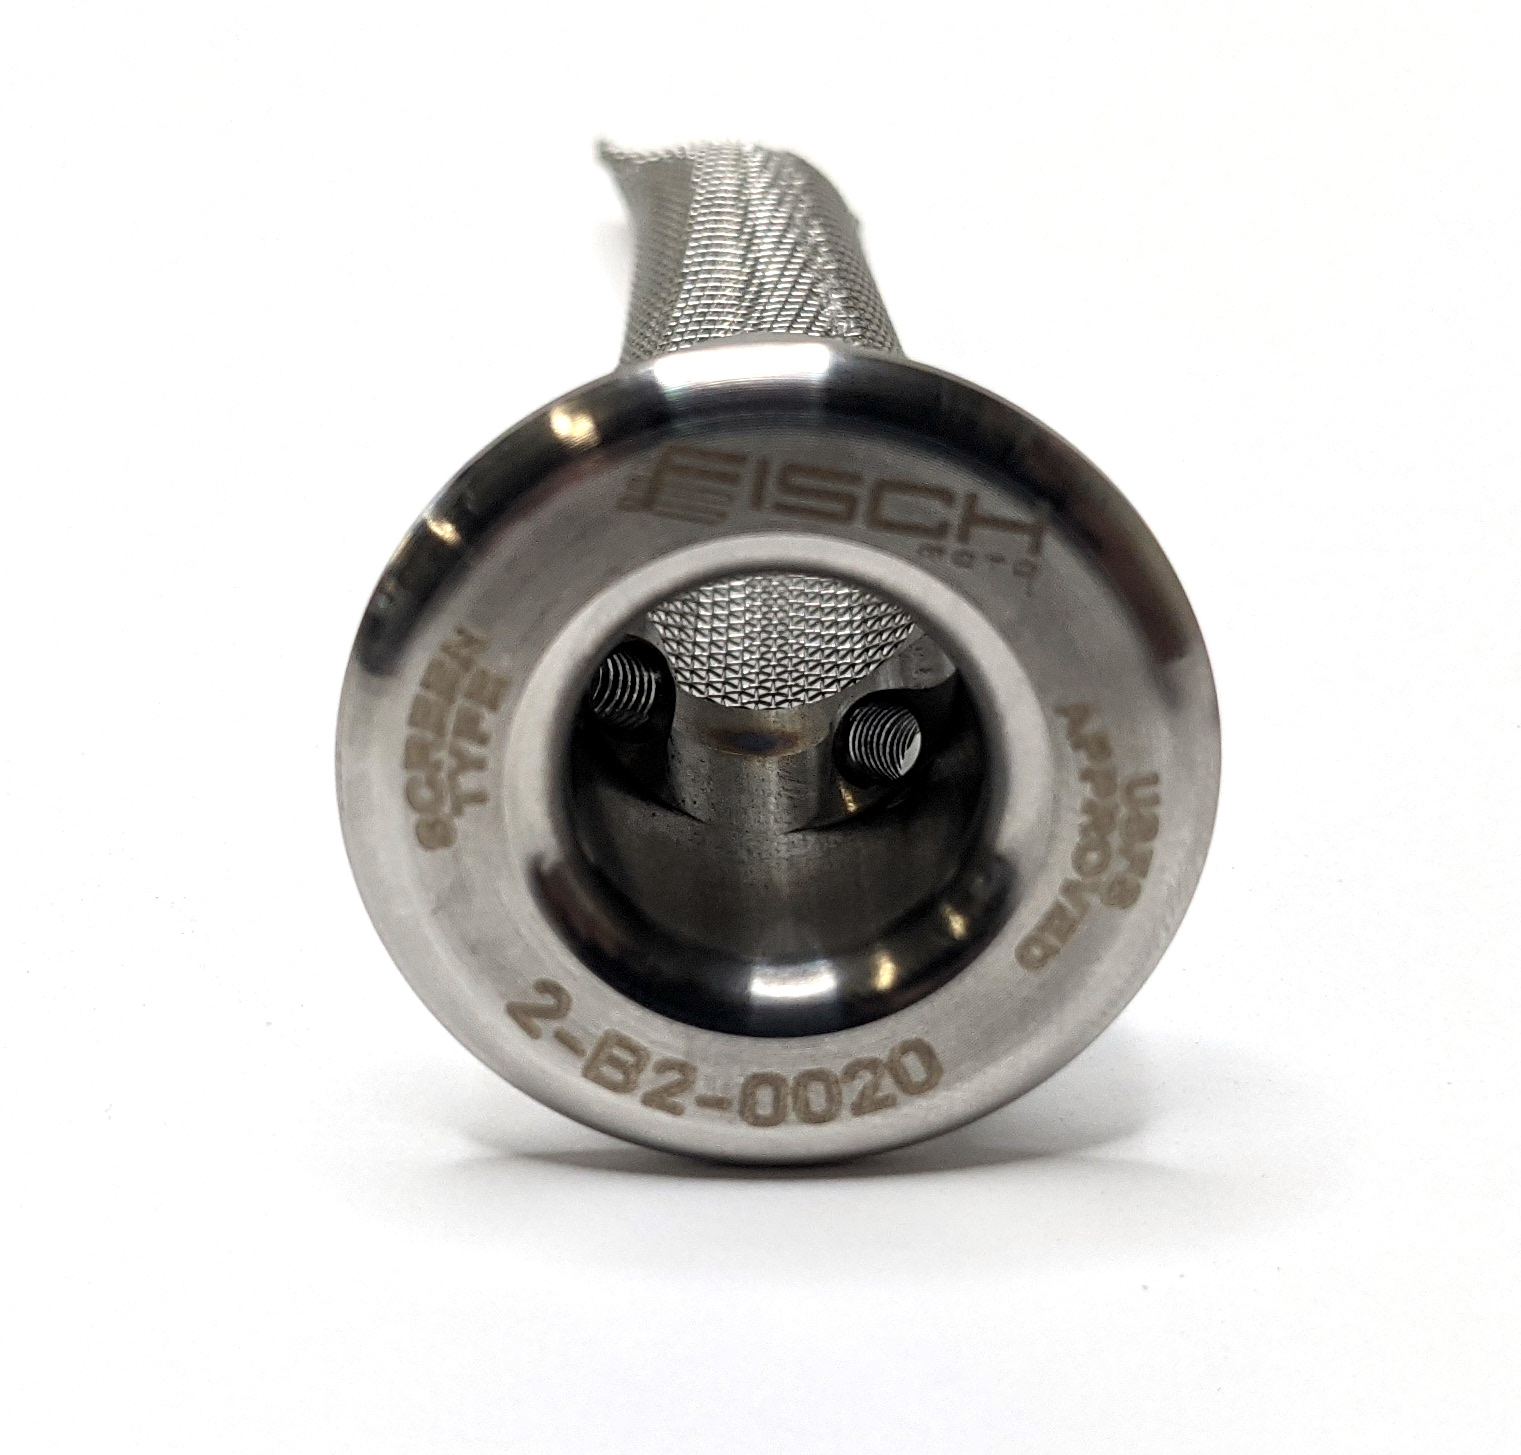 KIT 19 USFS Spark Arrestor w/ Wash Plug - For 19mm - 20mm Outlet - Click Image to Close